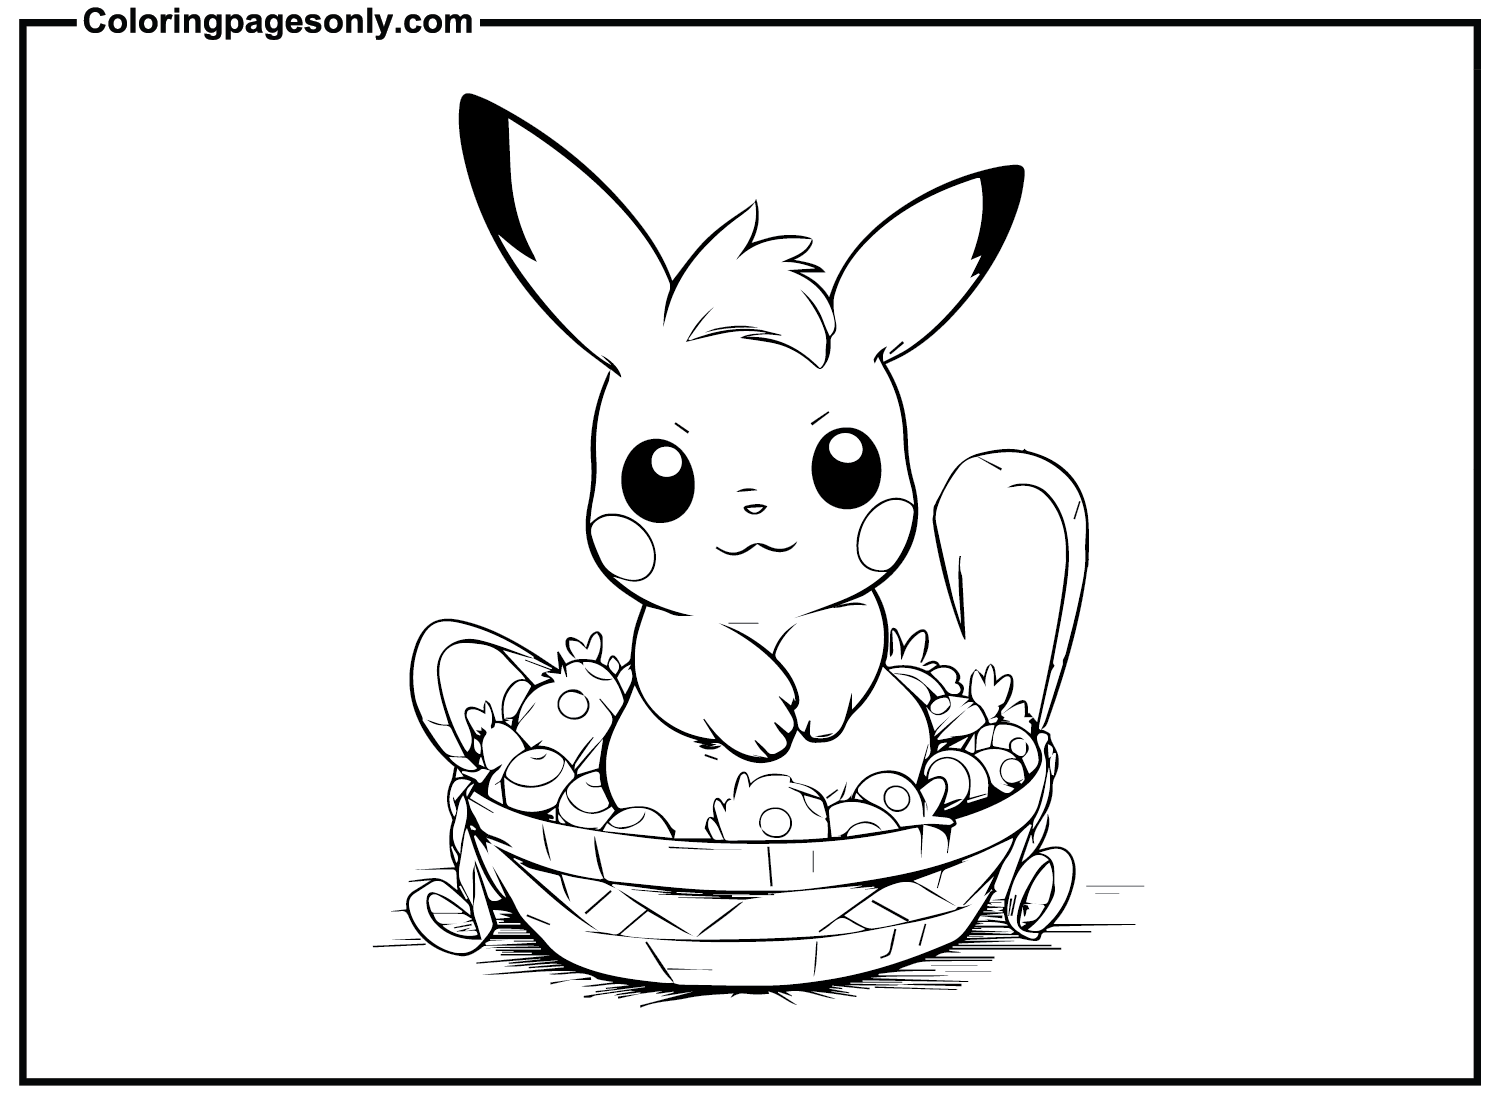 Pikachu pasquale del cartone animato pasquale